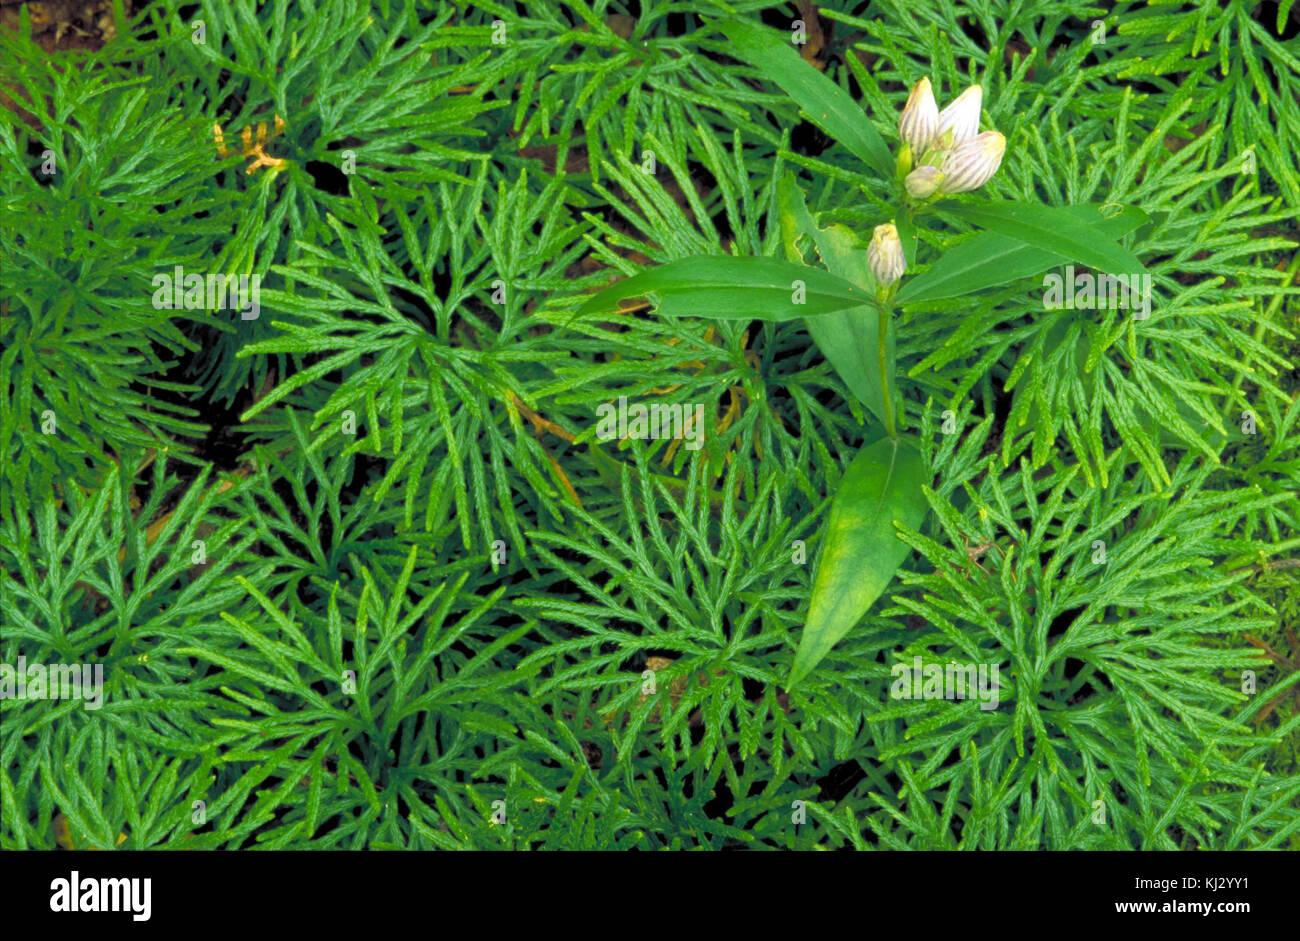 showy-gentian-flower-gentiana-decora-plant-growing-in-moss-KJ2YY1.jpg